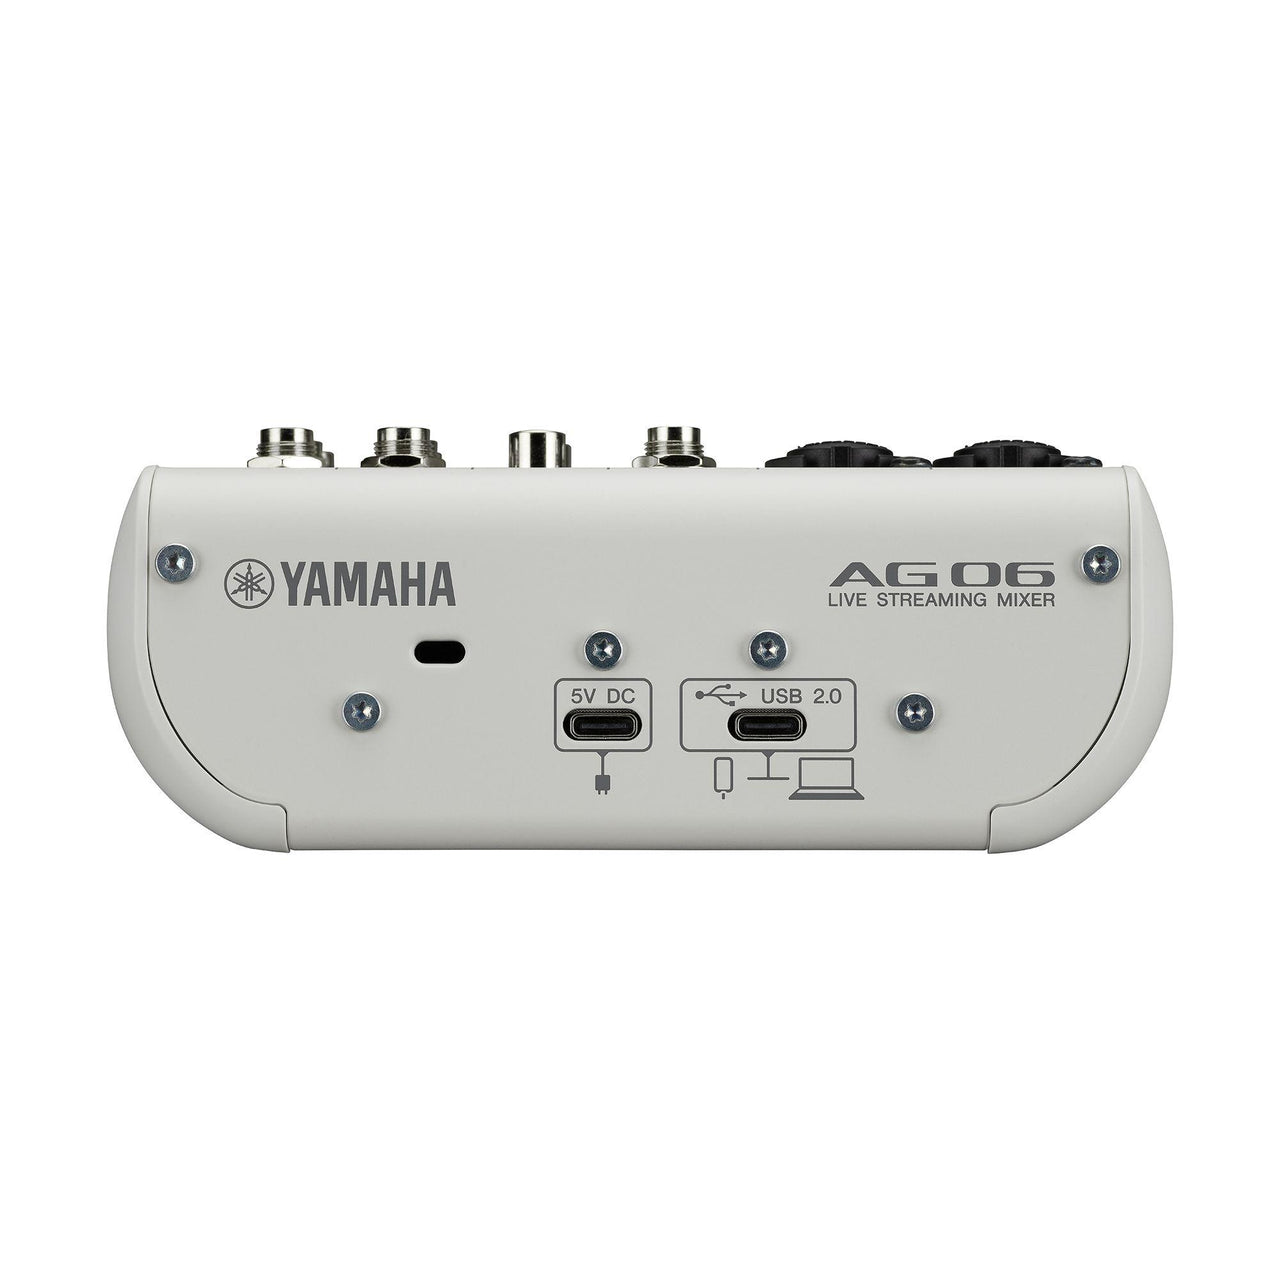 Mezcladora Yamaha 6 Canales Para Live Streaming, Ag06mk2w